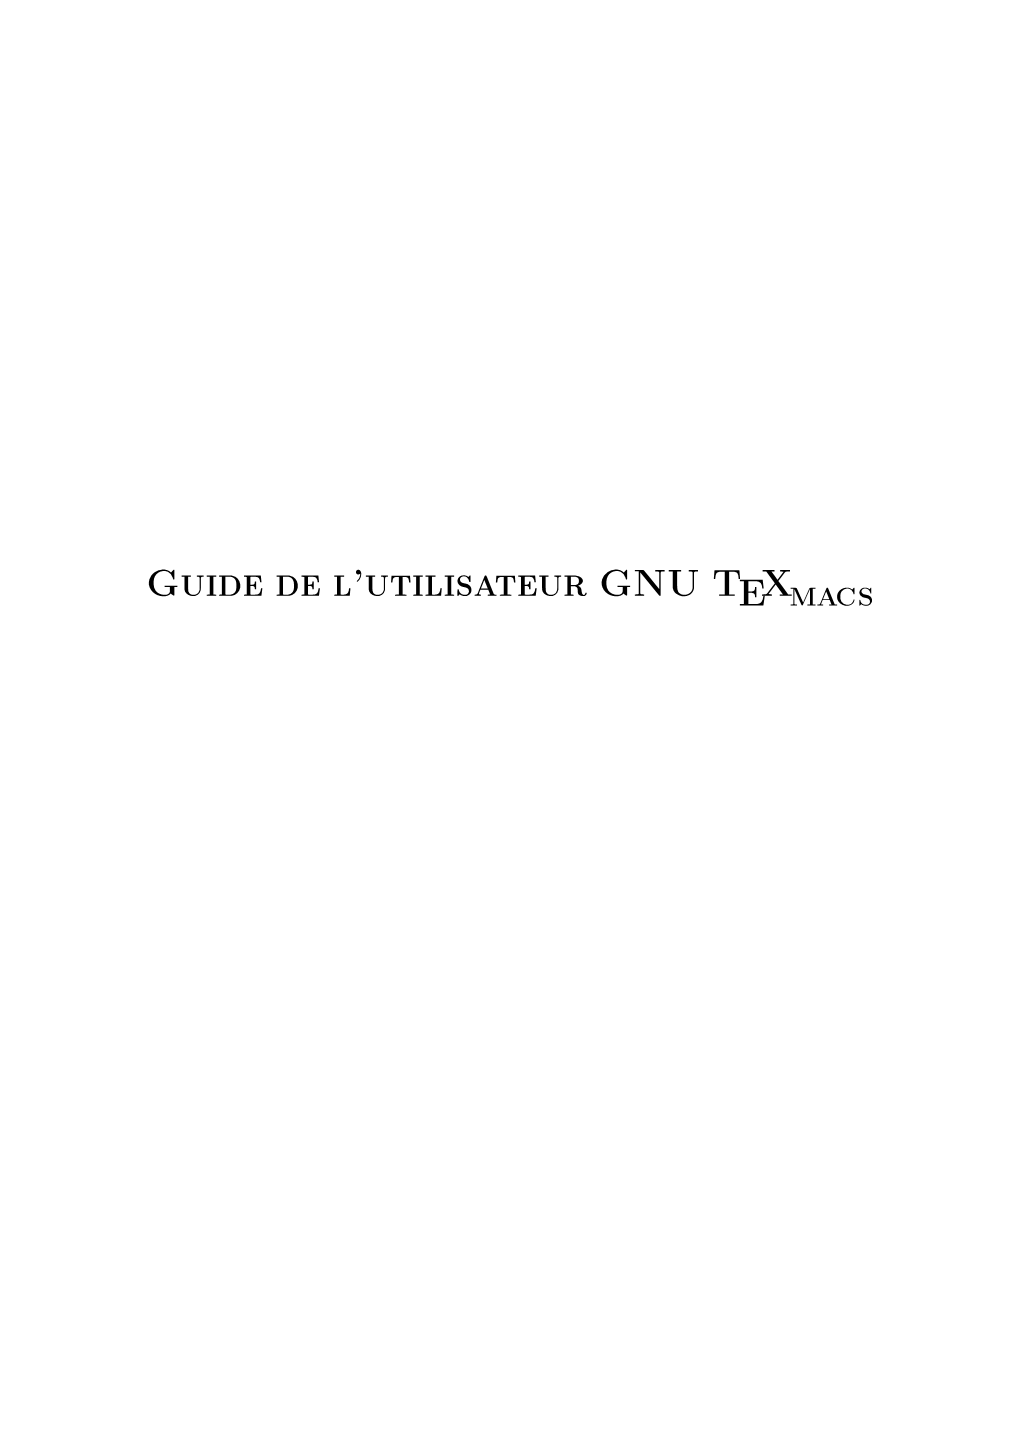 Guide De L'utilisateur GNU TEXMACS